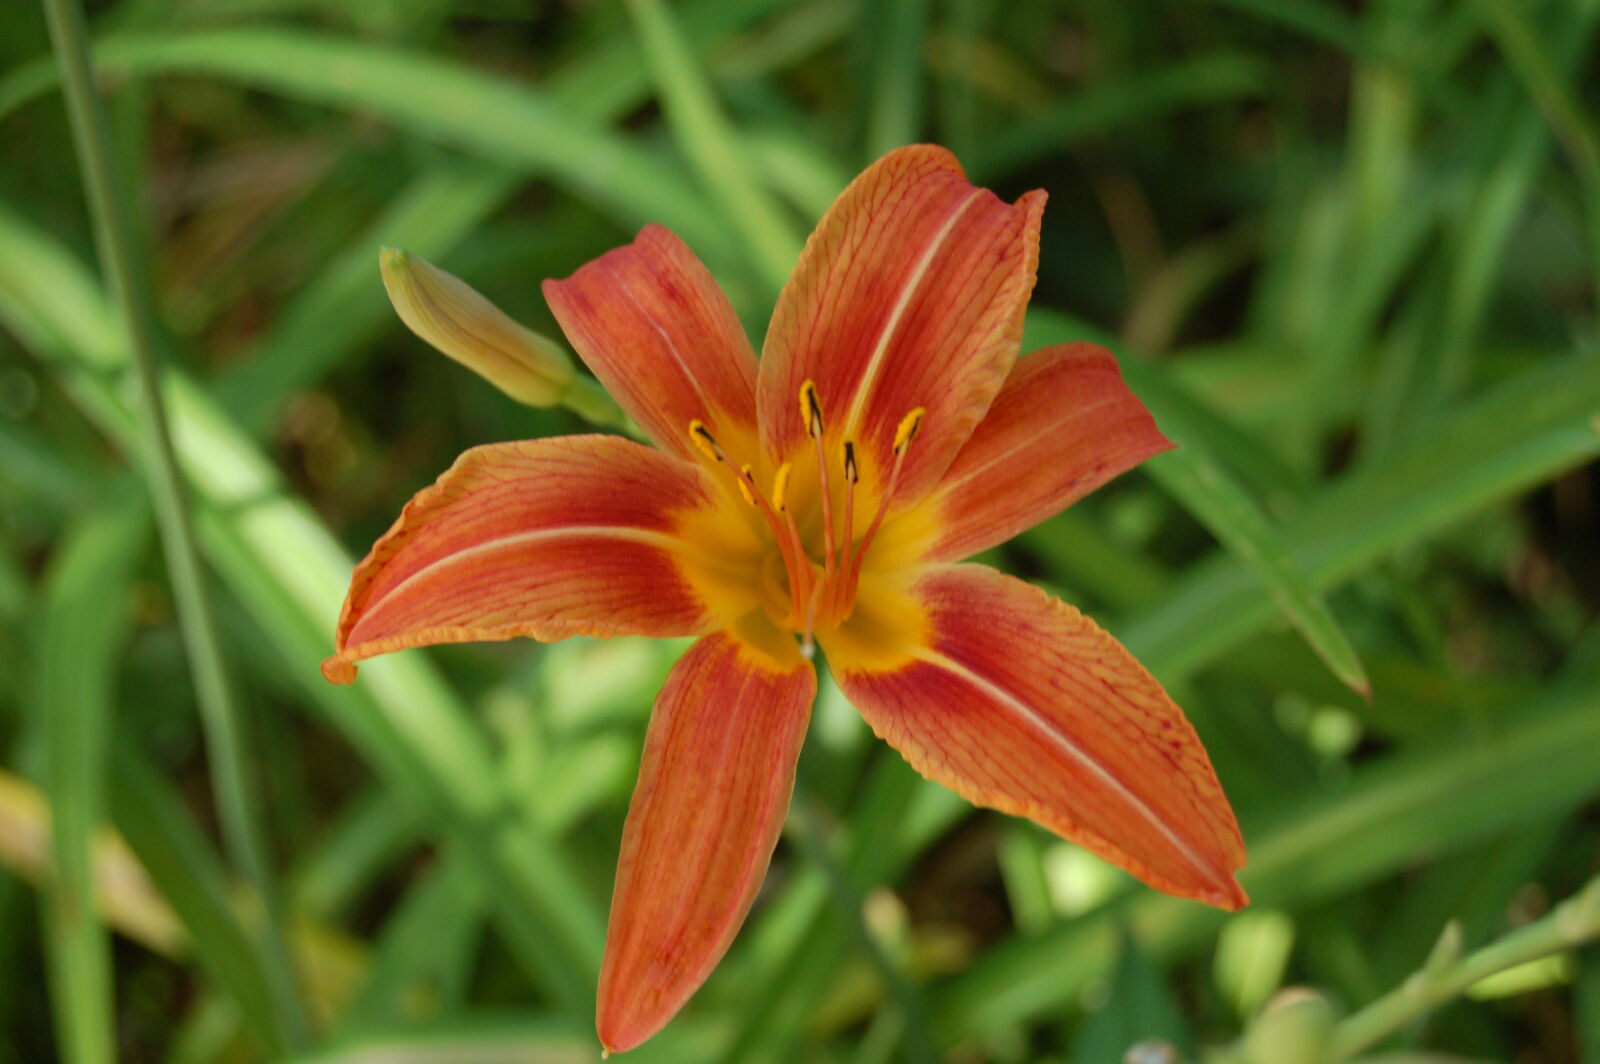 AF-S DX Zoom-Nikkor 18-55mm f/3.5-5.6G ED sample photo. Flower, flowers, orange, tiger photography